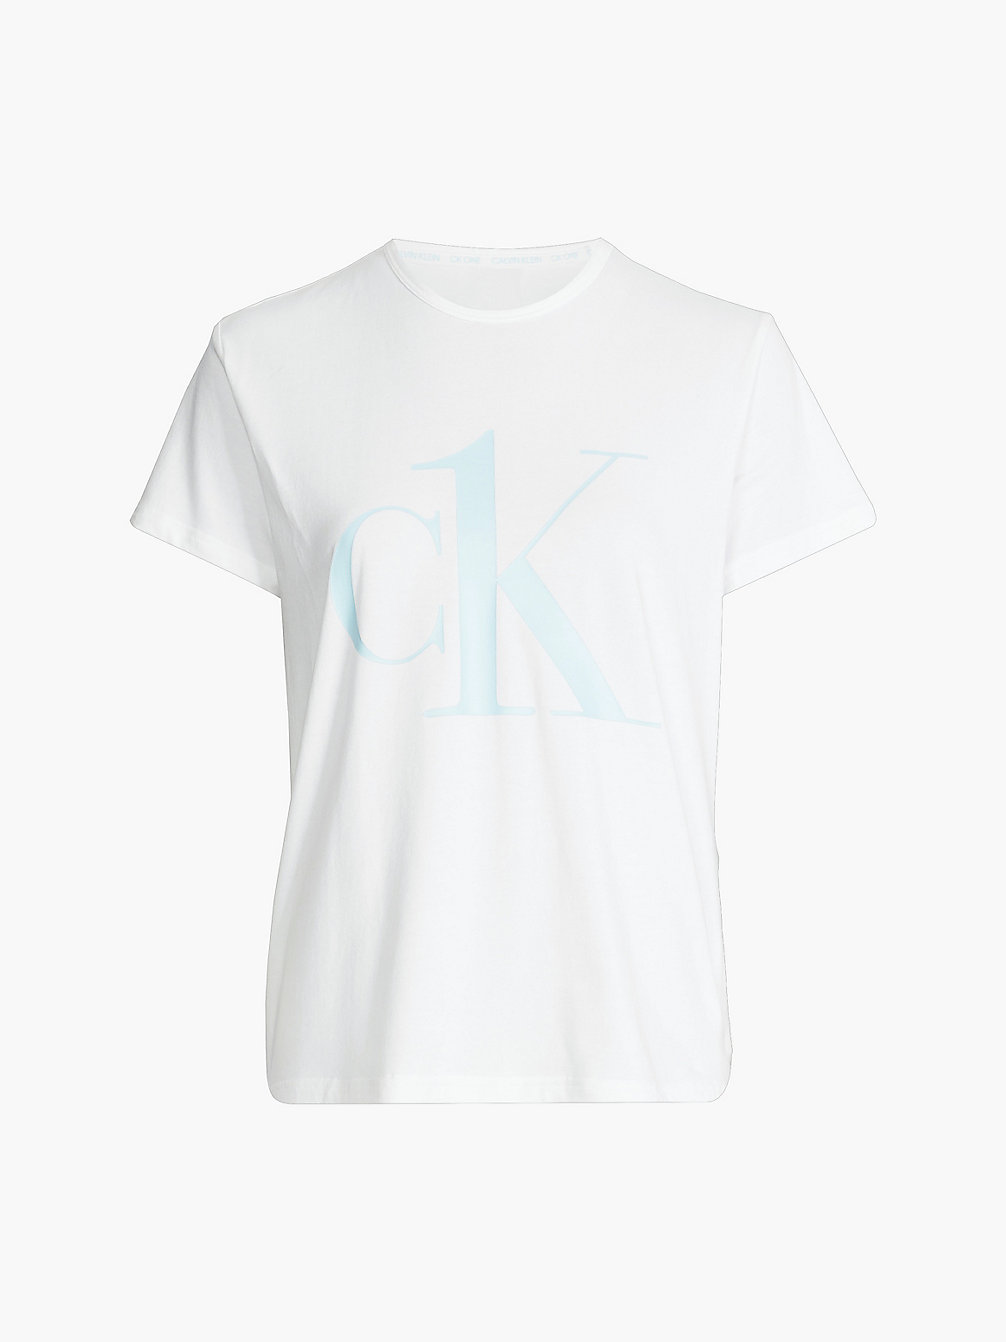 WHITE W/ PALEST BLUE LOGO > Pyjamatop - CK One > undefined dames - Calvin Klein